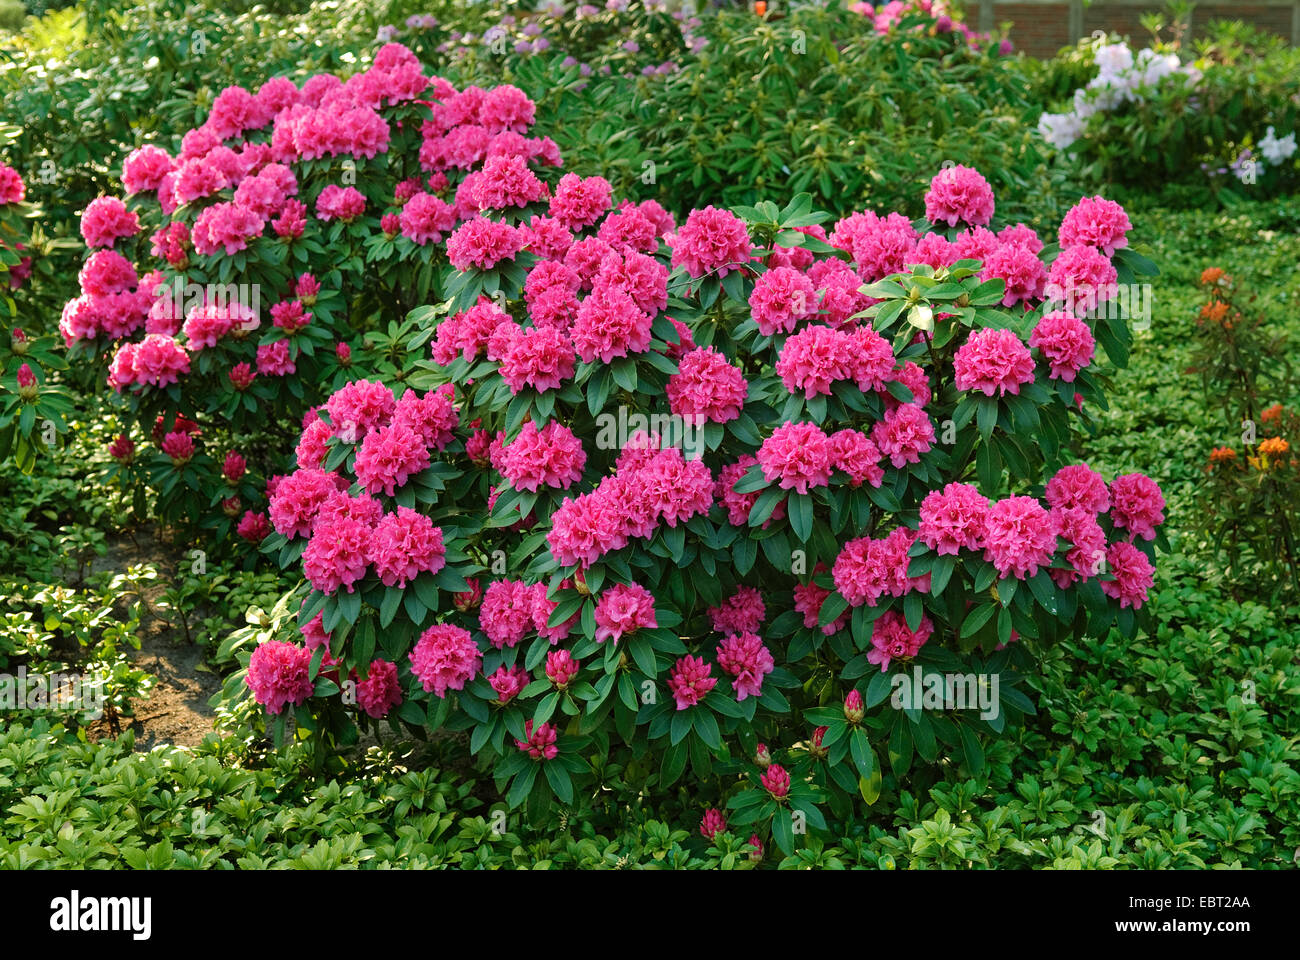 rhododendron (Rhododendron 'P.A. Colijn', Rhododendron P.A. Colijn), cultivar P.A. Colijn Stock Photo